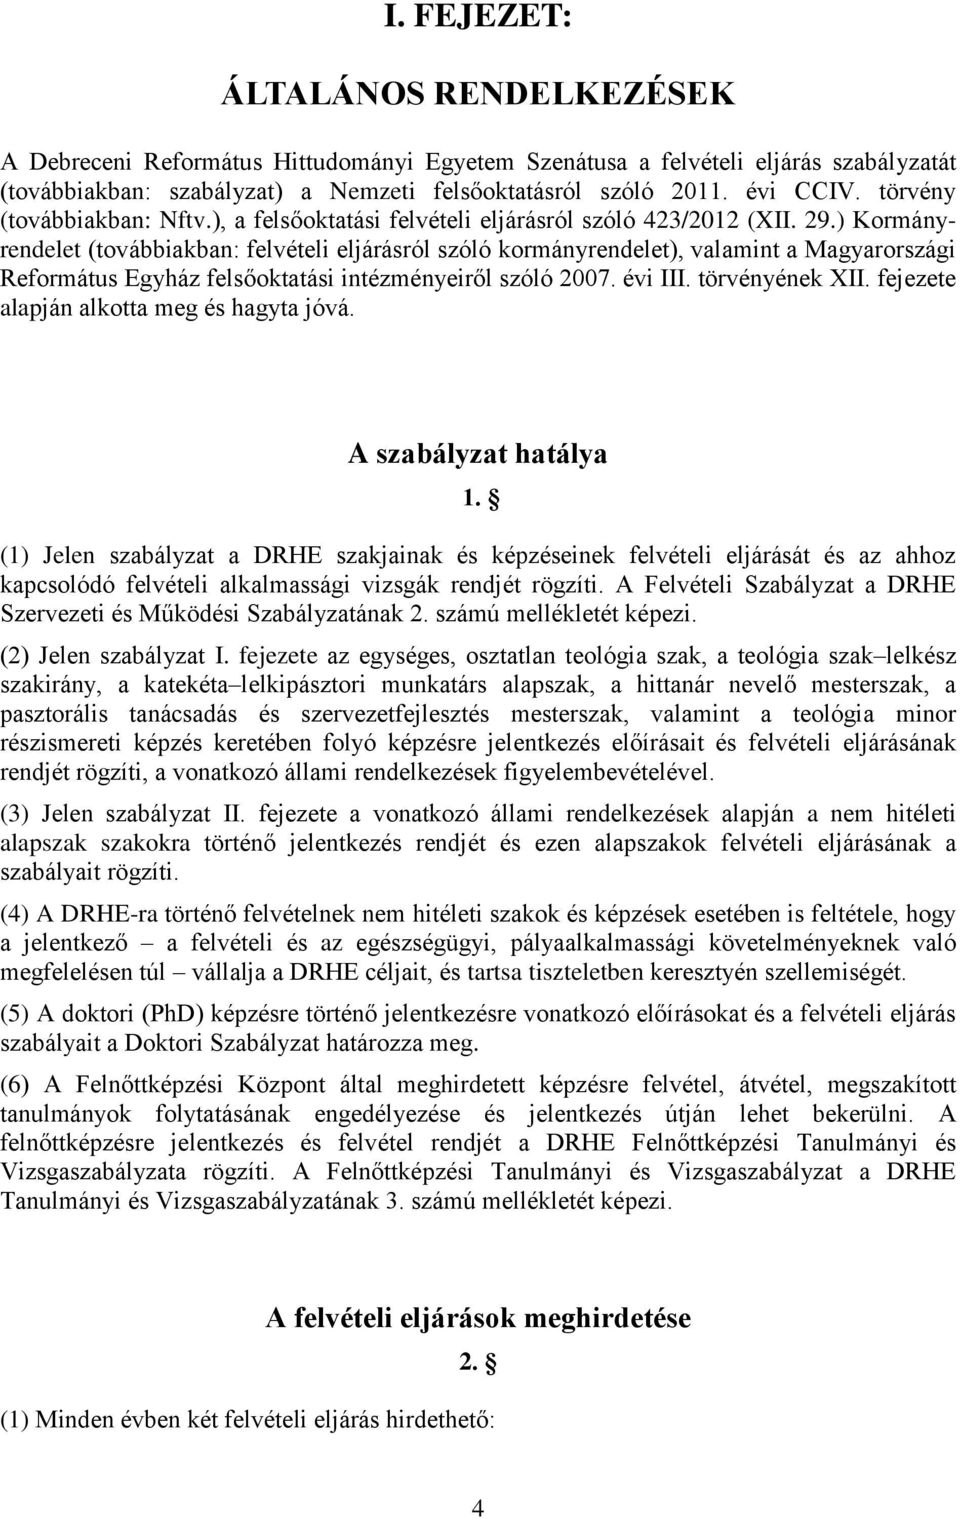 ) Kormányrendelet (továbbiakban: felvételi eljárásról szóló kormányrendelet), valamint a Magyarországi Református Egyház felsőoktatási intézményeiről szóló 2007. évi III. törvényének XII.